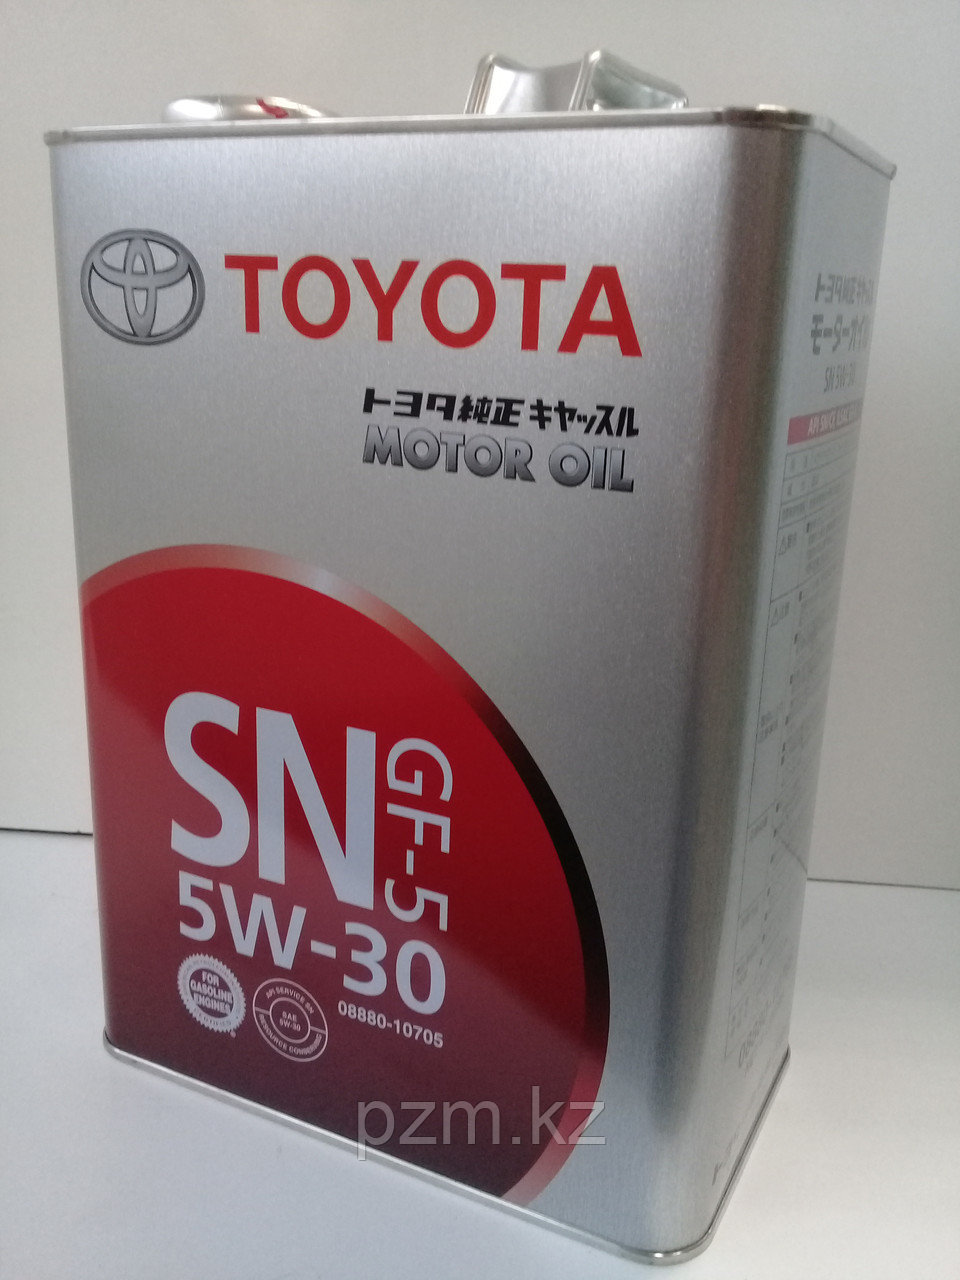 Замена масла в двигателе Toyota RAV4 (масло + фильтр)  оригинальное моторное масло тойота 5W30